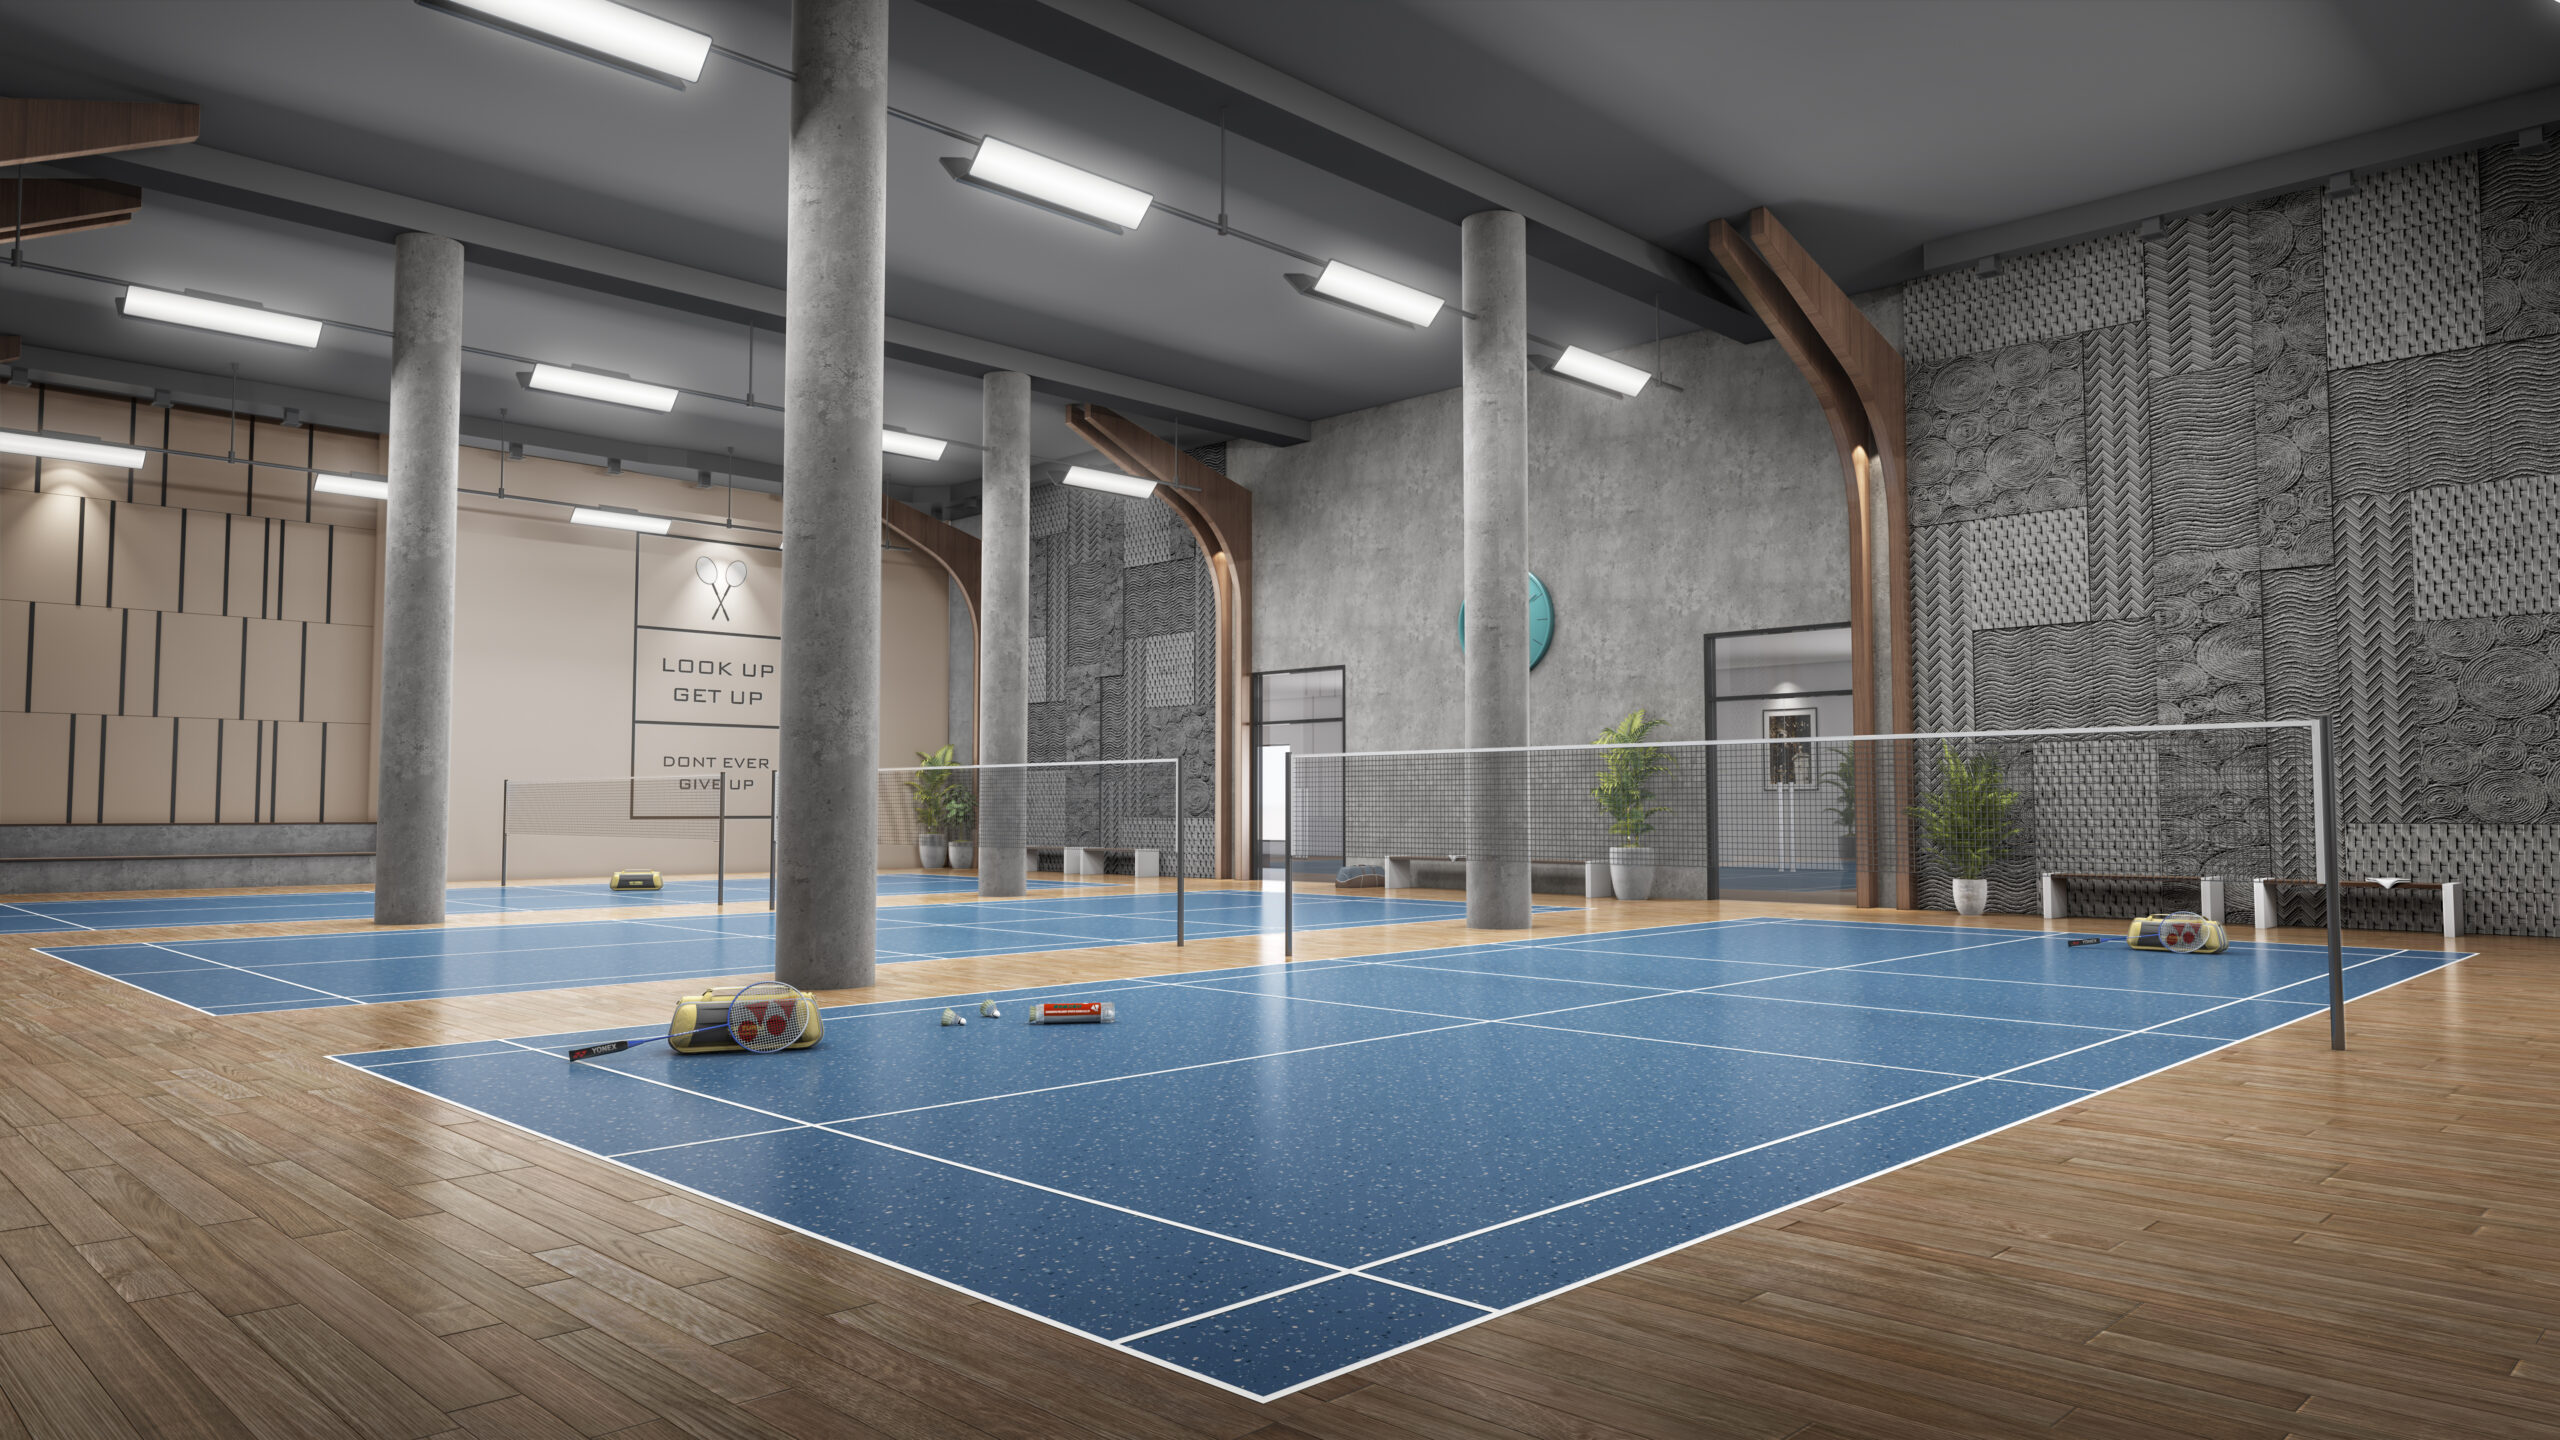 Three badminton courts, one happy community